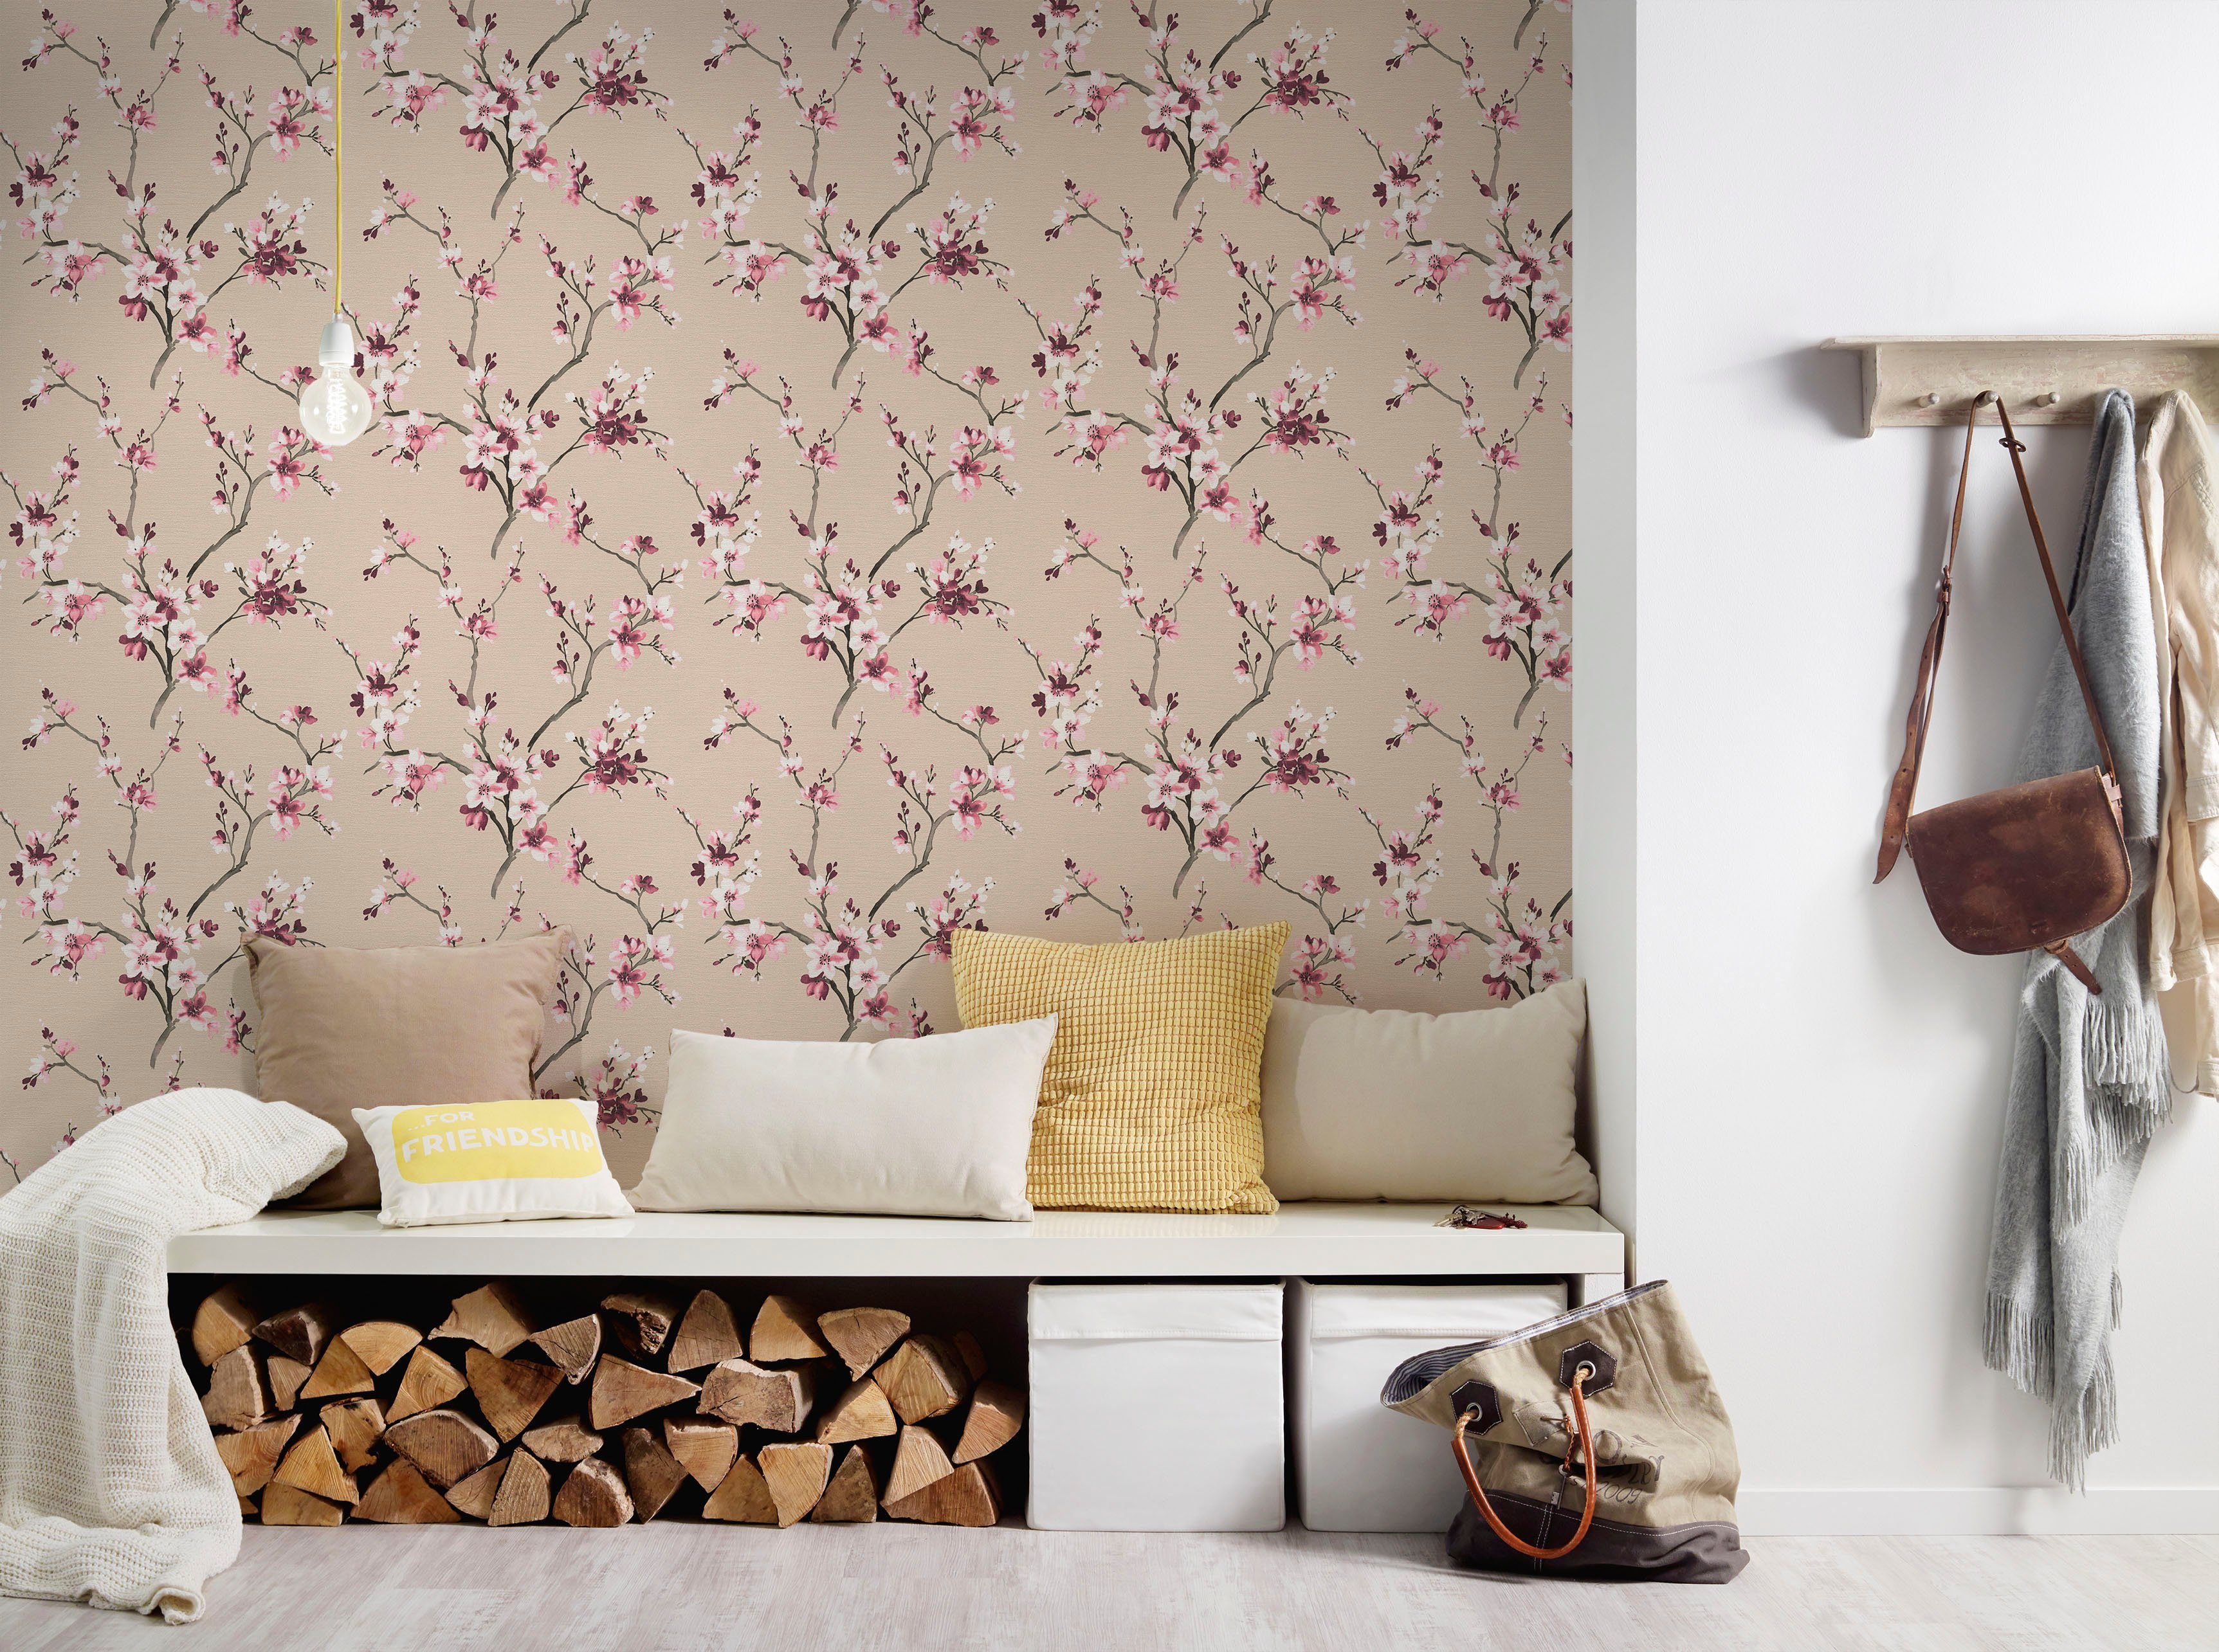 living walls Vliestapete Desert floral, Blumenoptik Tapete strukturiert, natürlich, geblümt, rosa/beige Lodge